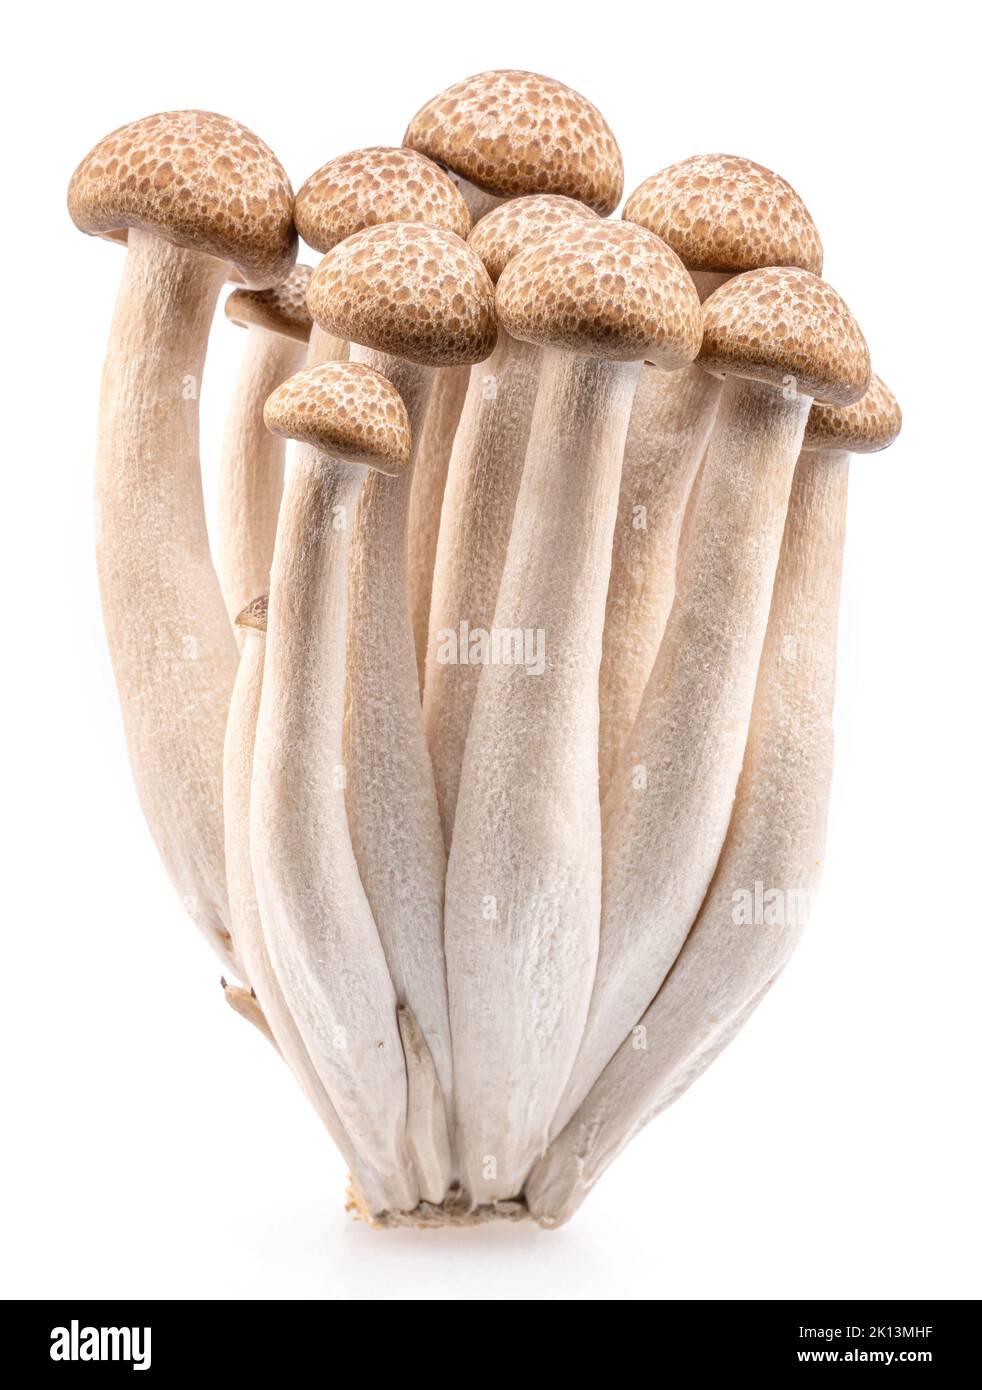 Groupe de champignons japonais comestibles hon shimeji isolés sur fond blanc. Gros plan. Banque D'Images